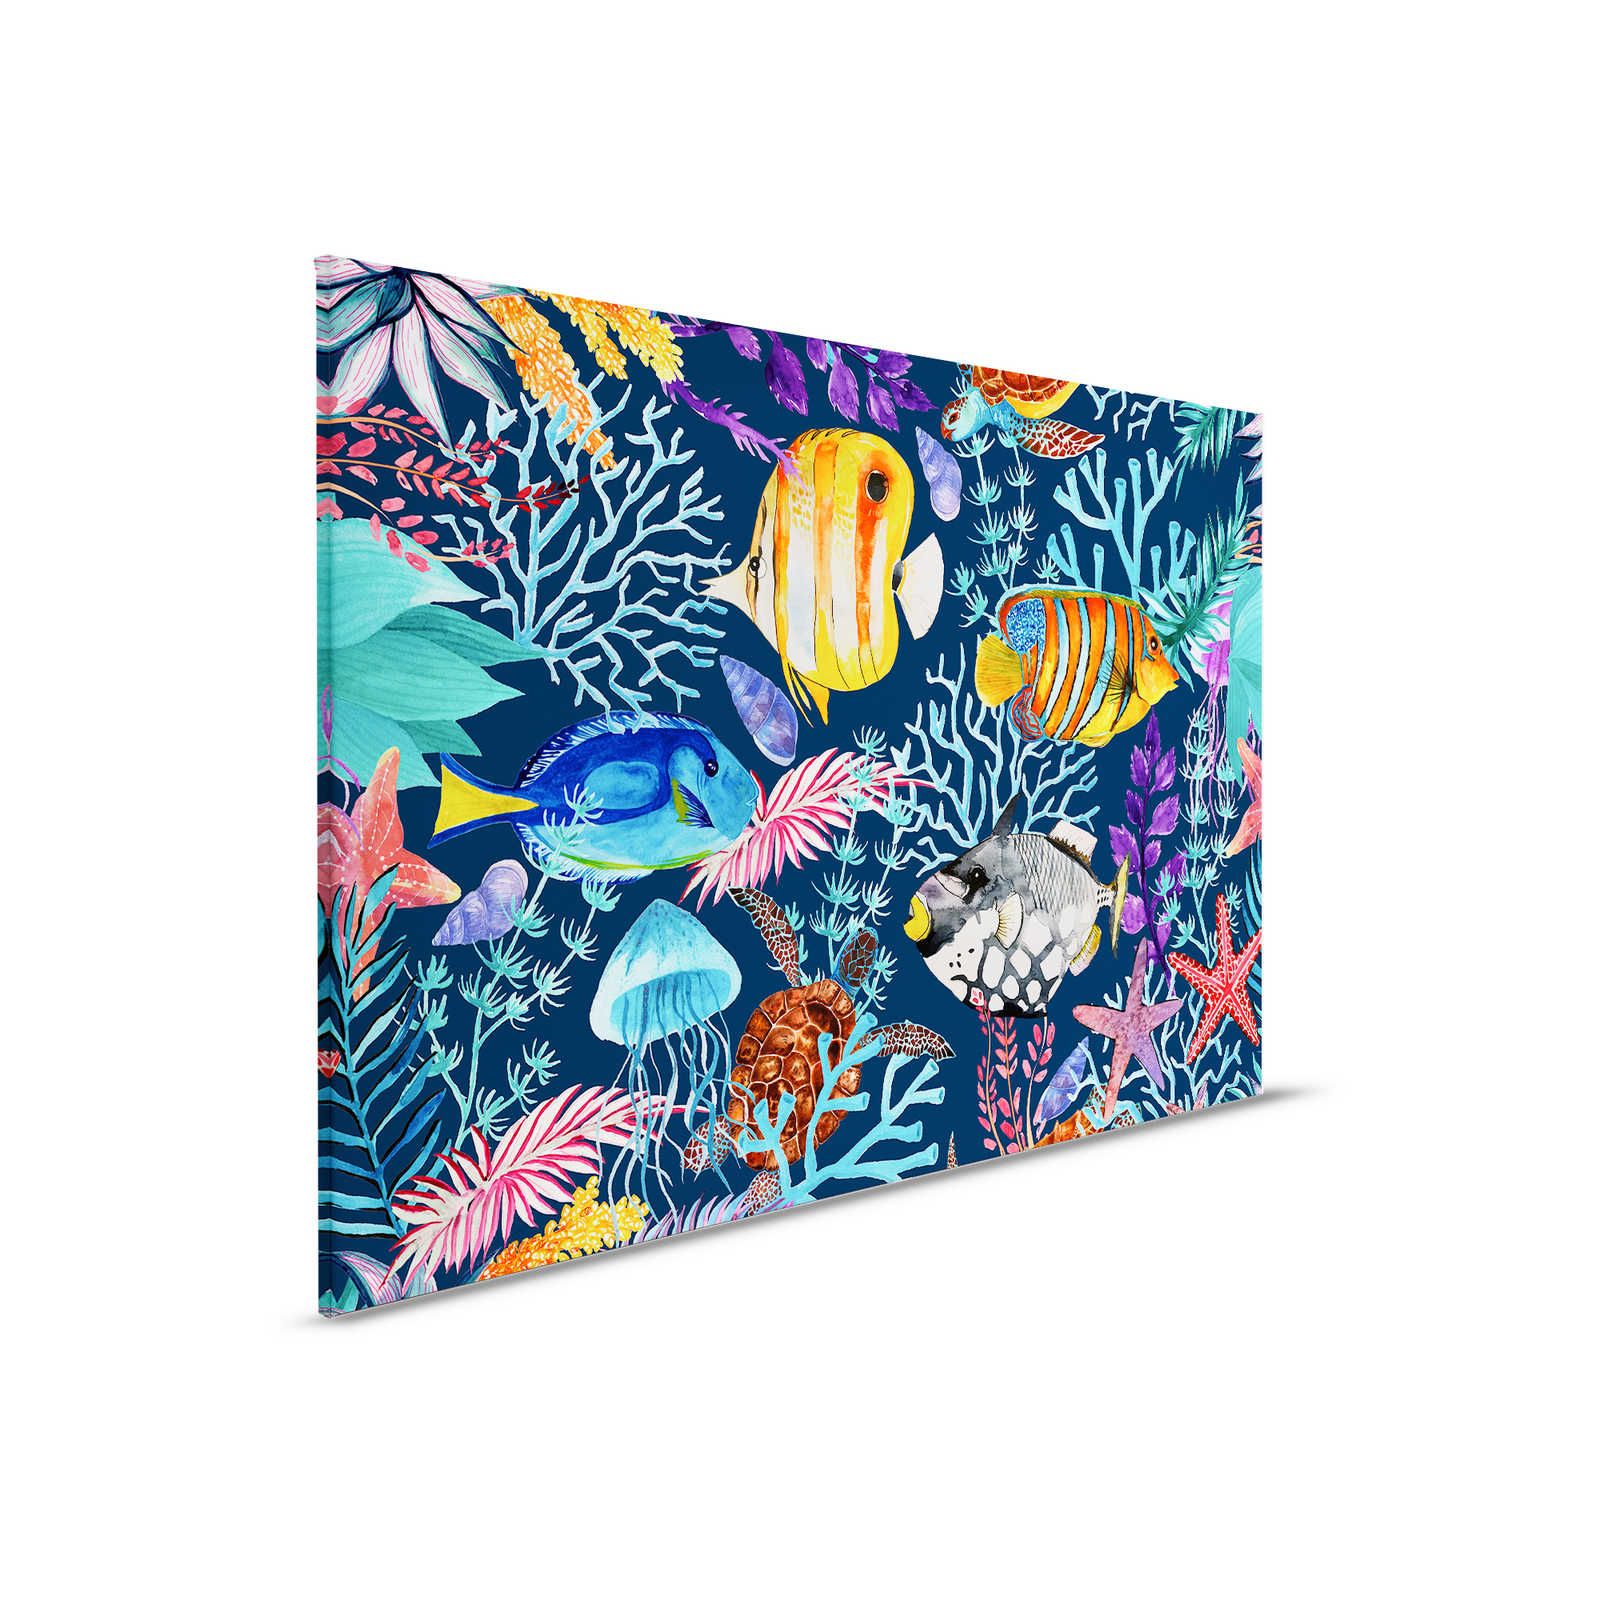 Onderwater Canvas Schilderij met kleurrijke vissen en zeesterren - 0,90 m x 0,60 m
